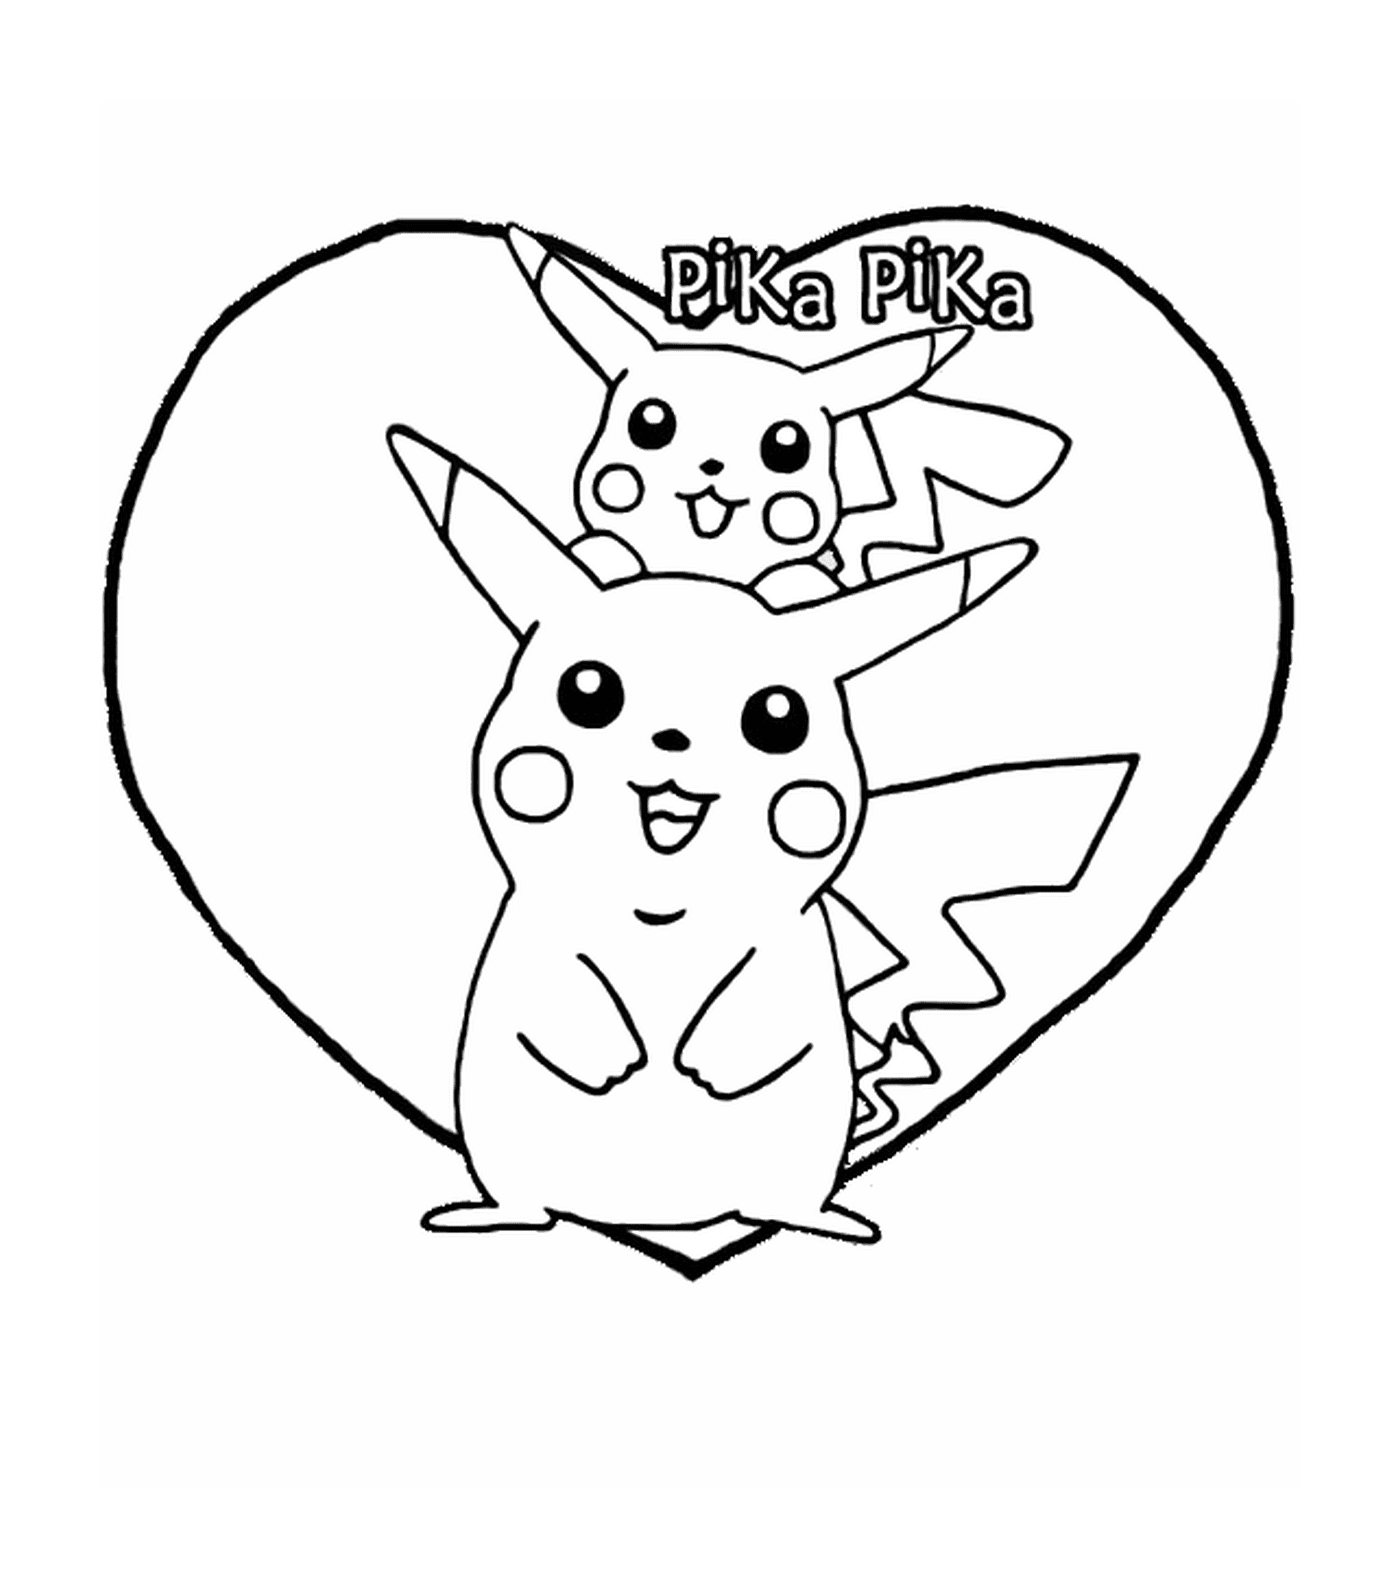  Pikachu und Pika im Herzen 